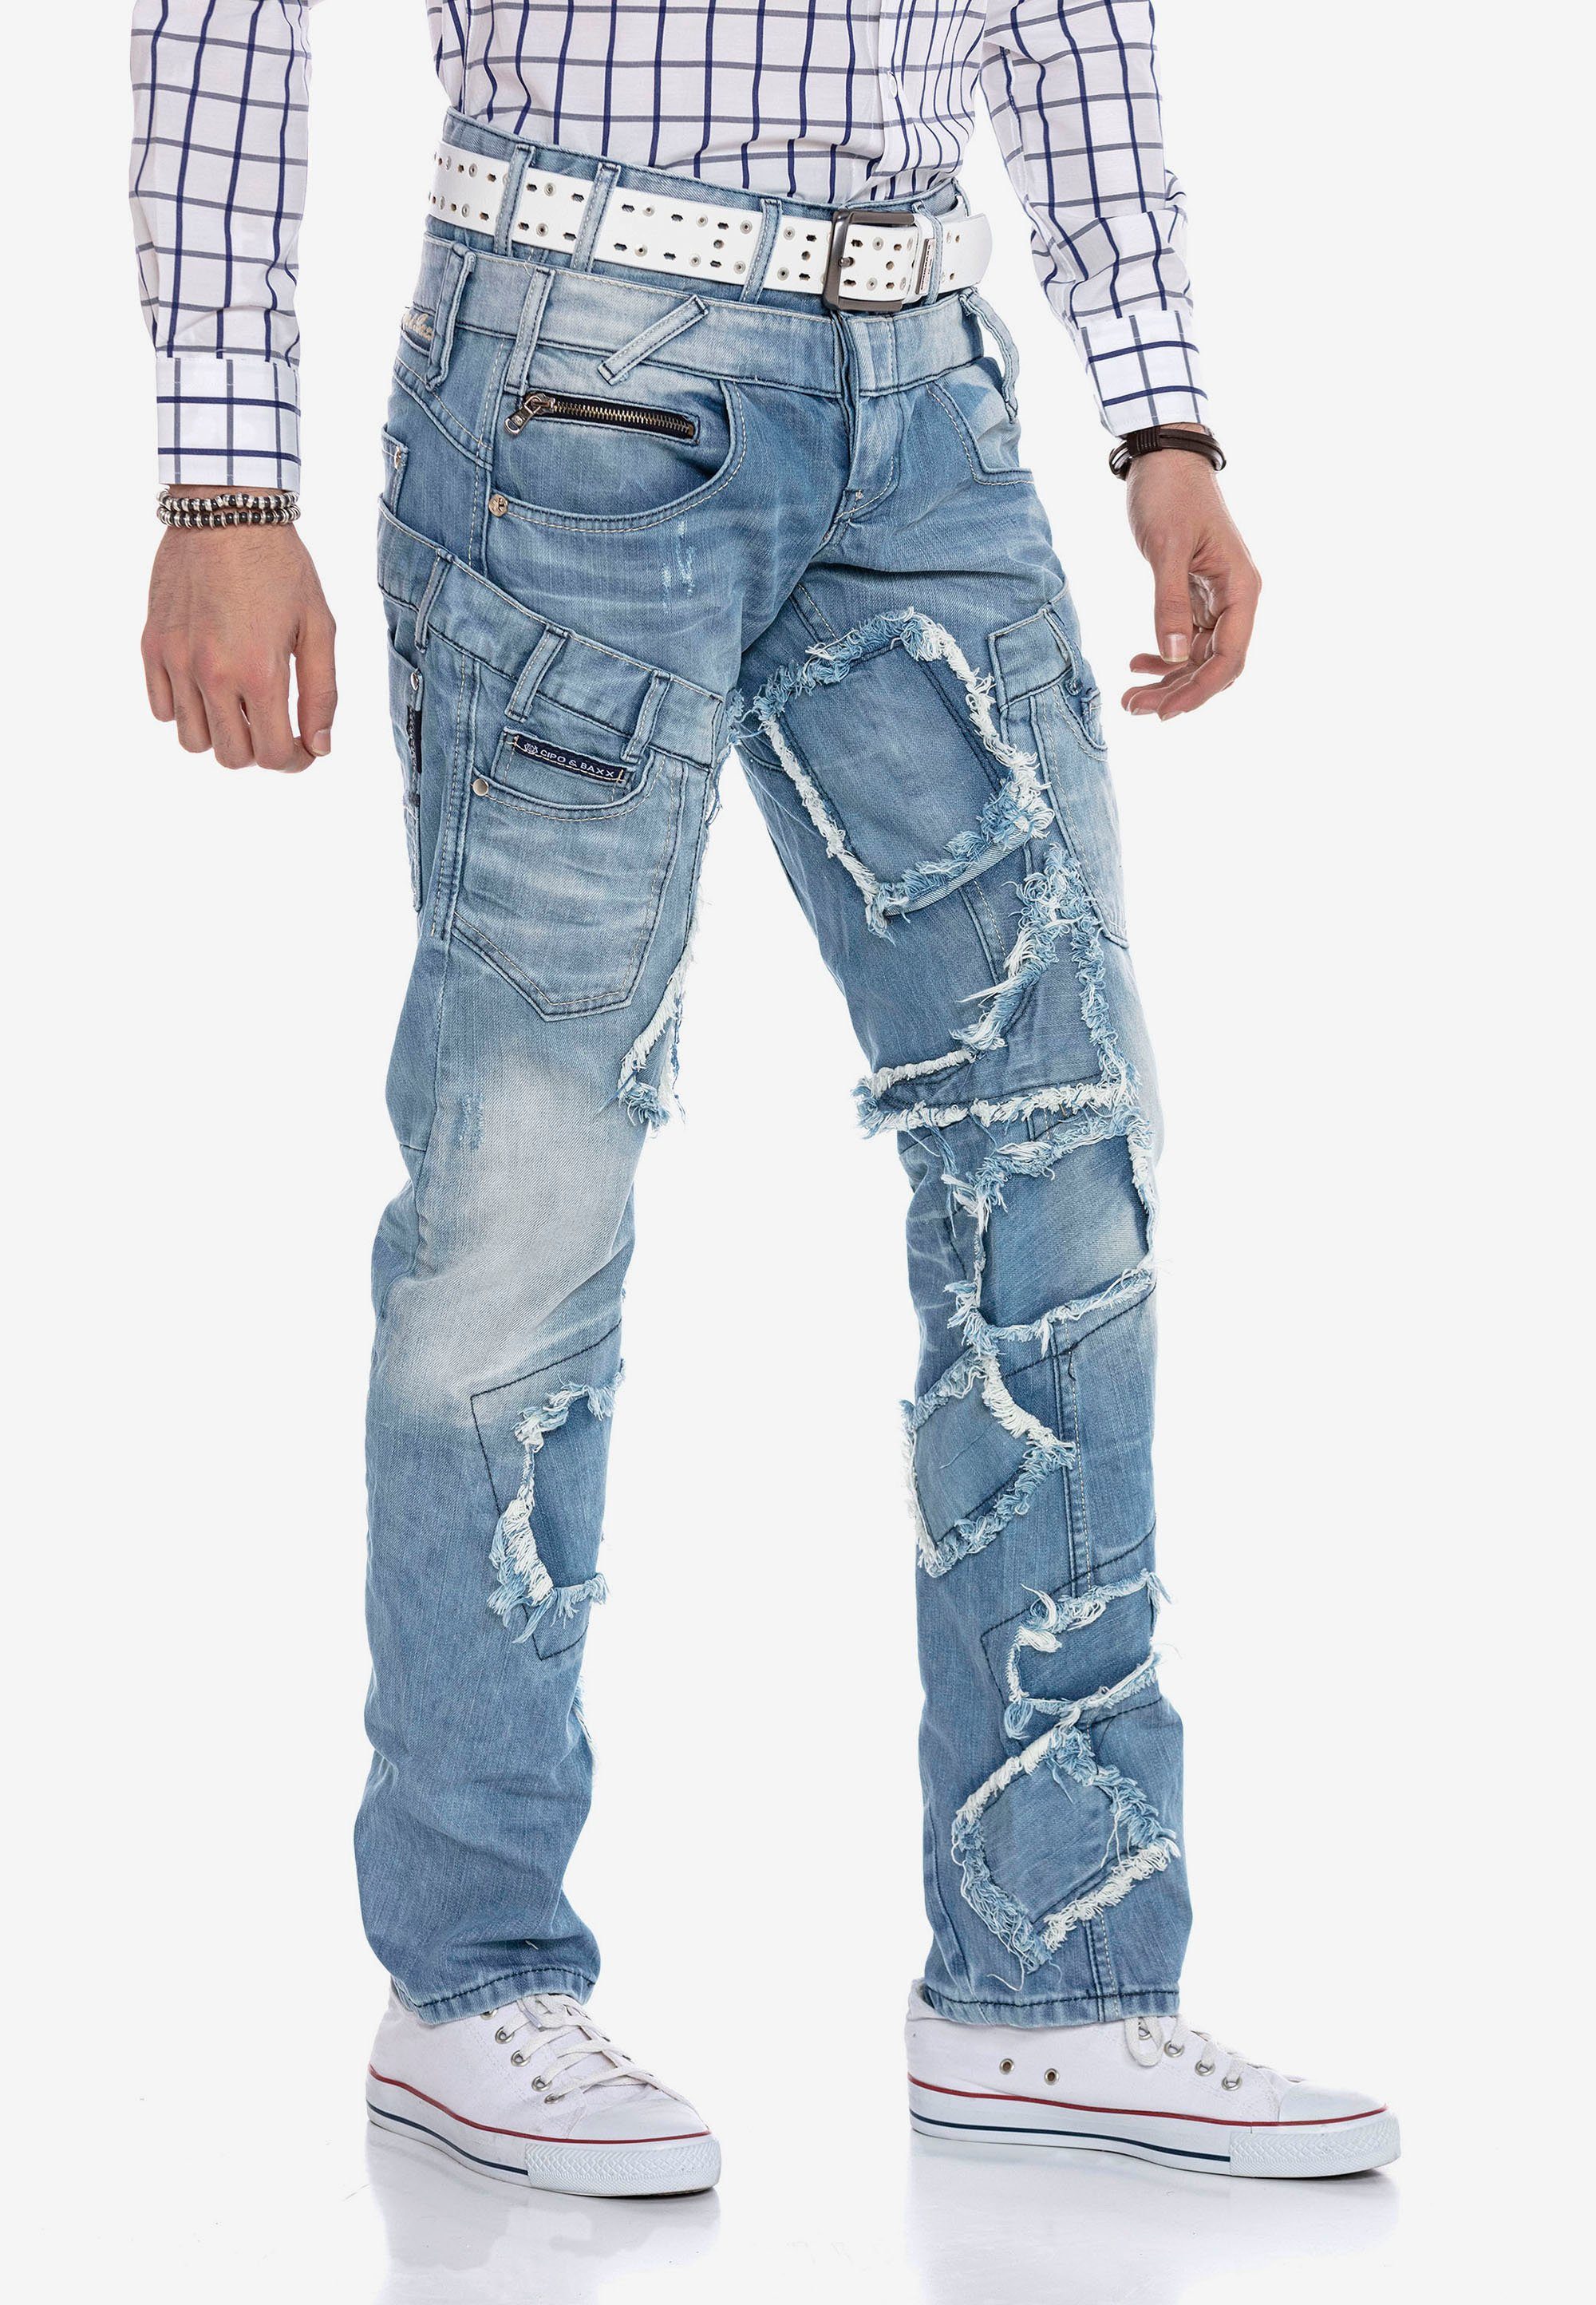 Cipo & Baxx im Bequeme Jeans Patchwork-Design trendigen